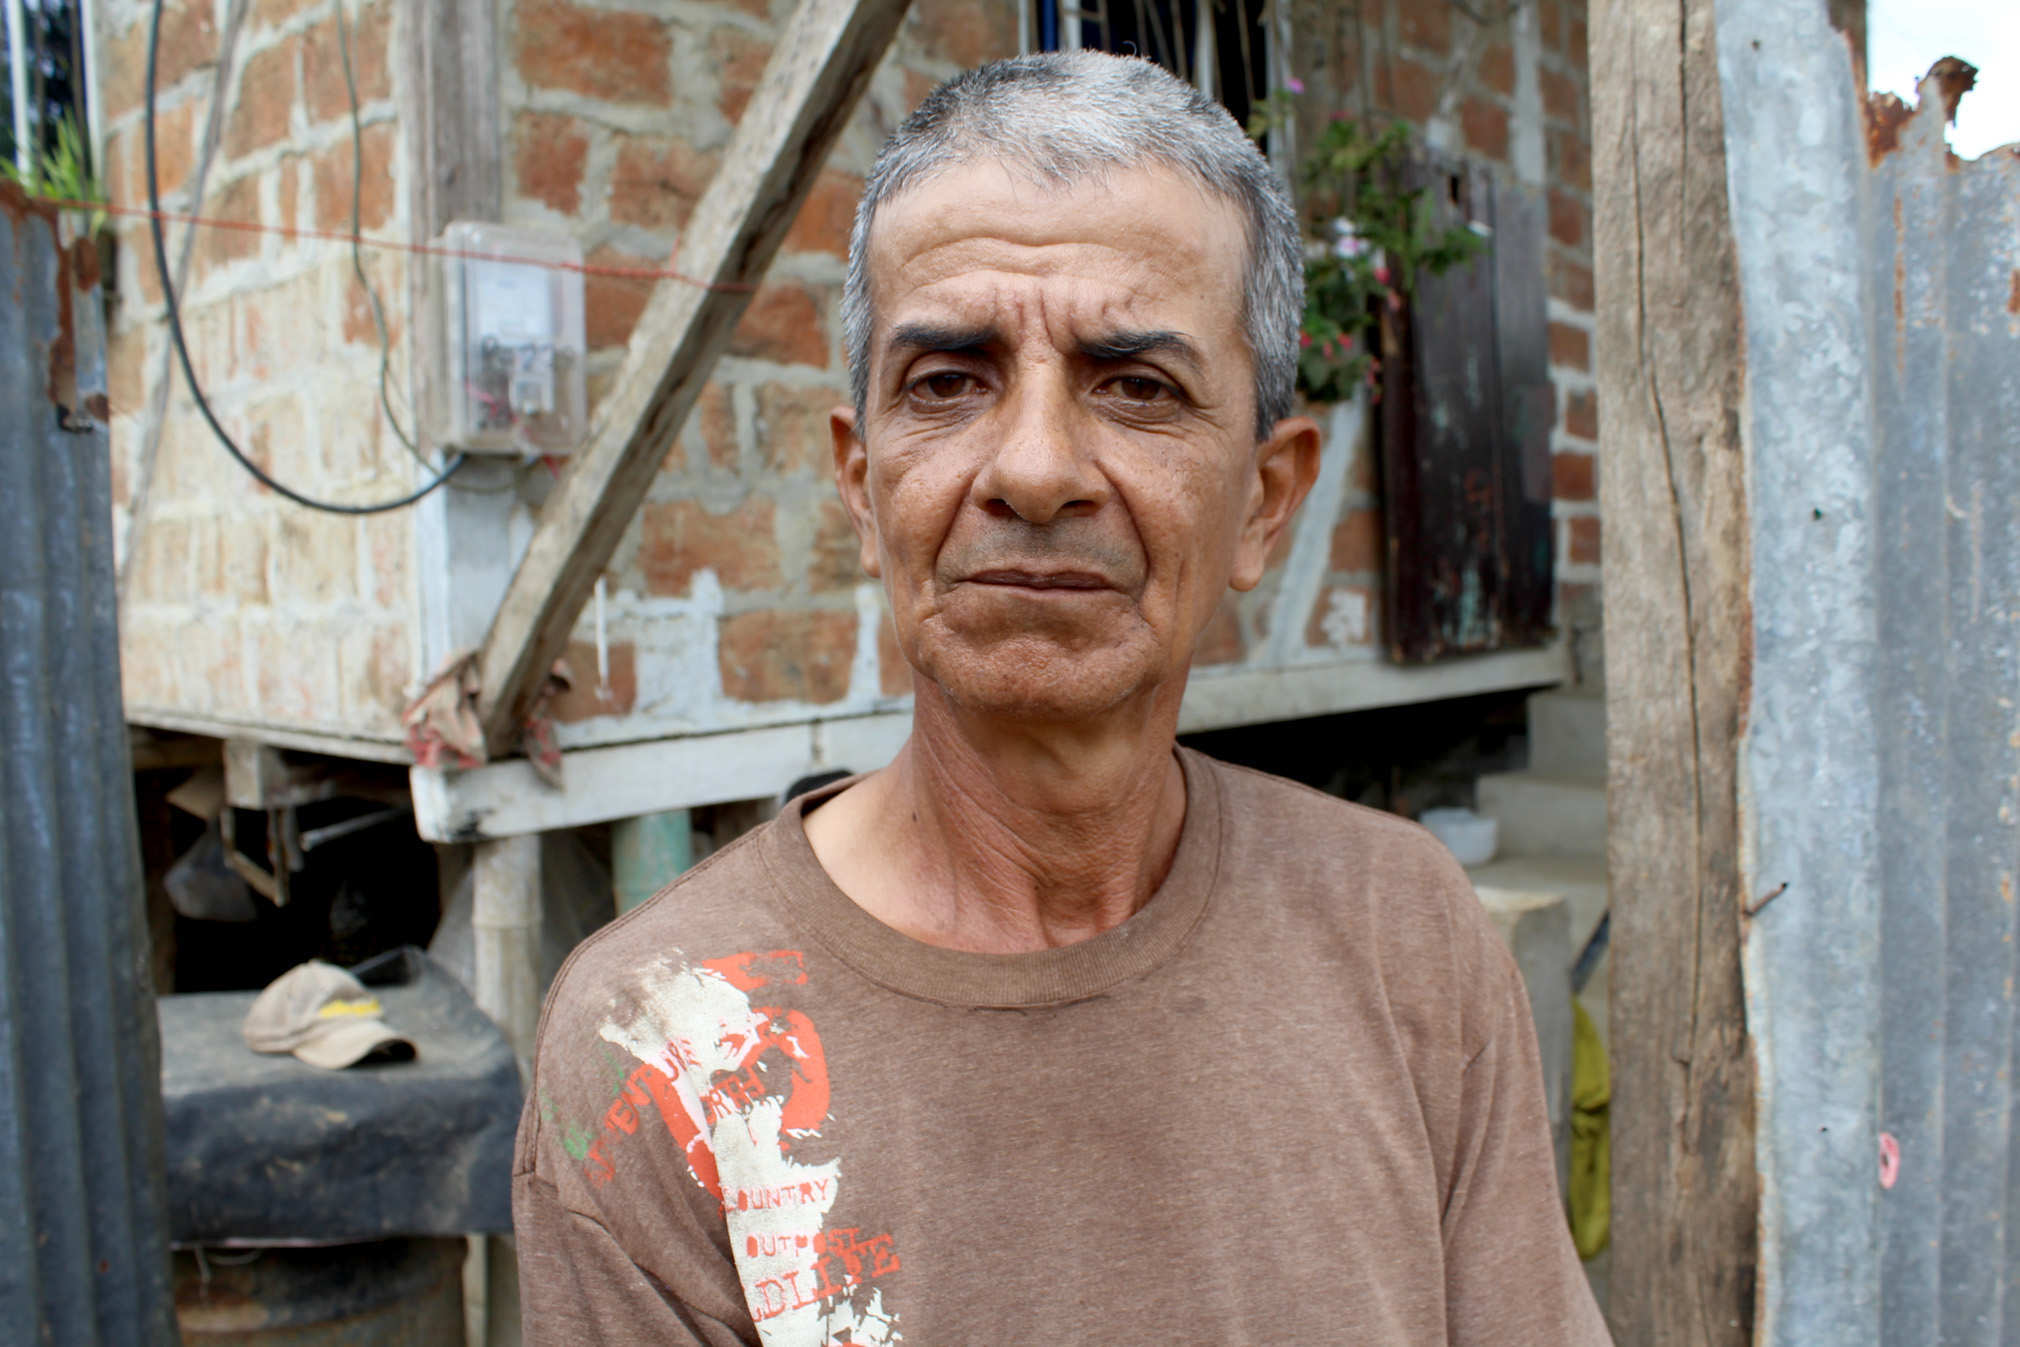 MARIANO ALEX ZAMBRANO, habitante de la ciudadela Jorge Gallardo